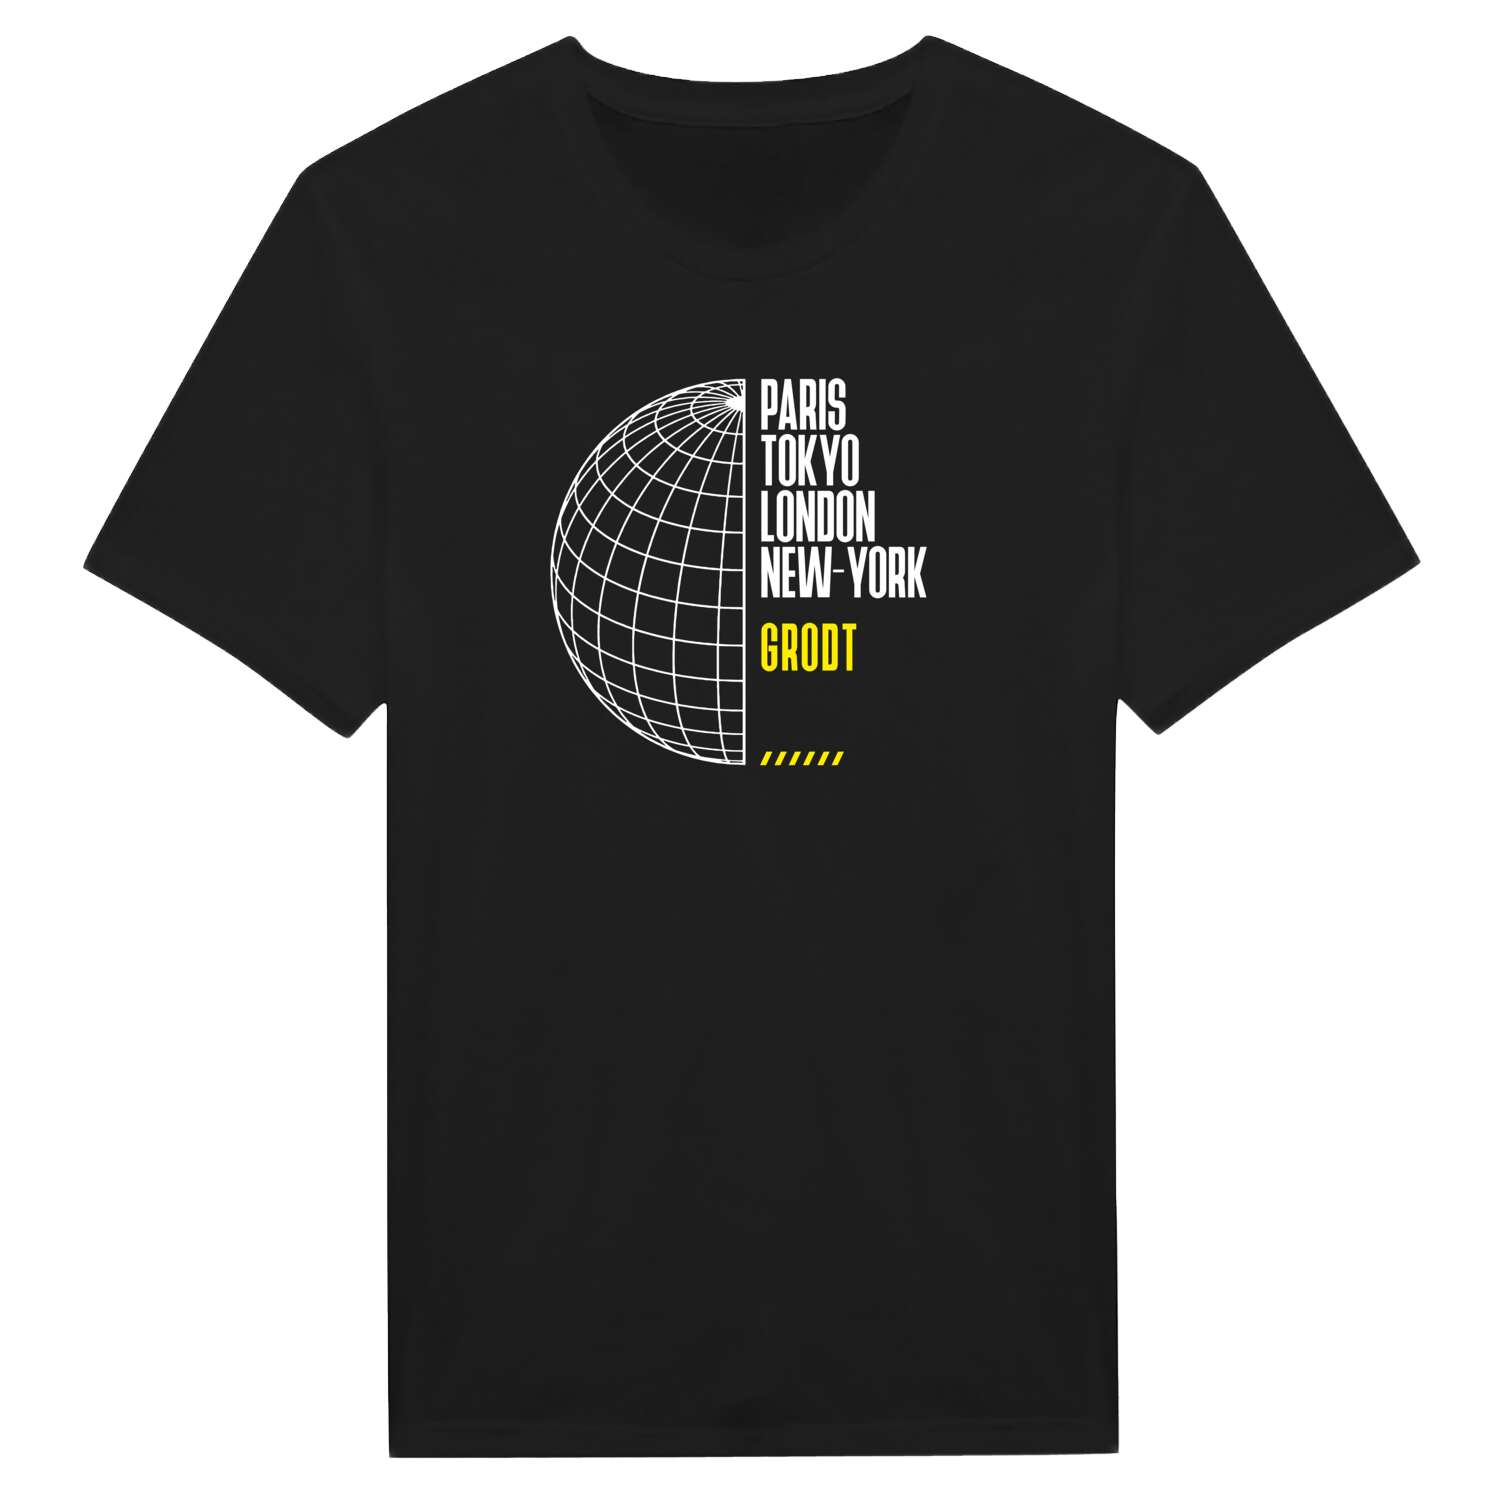 Grodt T-Shirt »Paris Tokyo London«